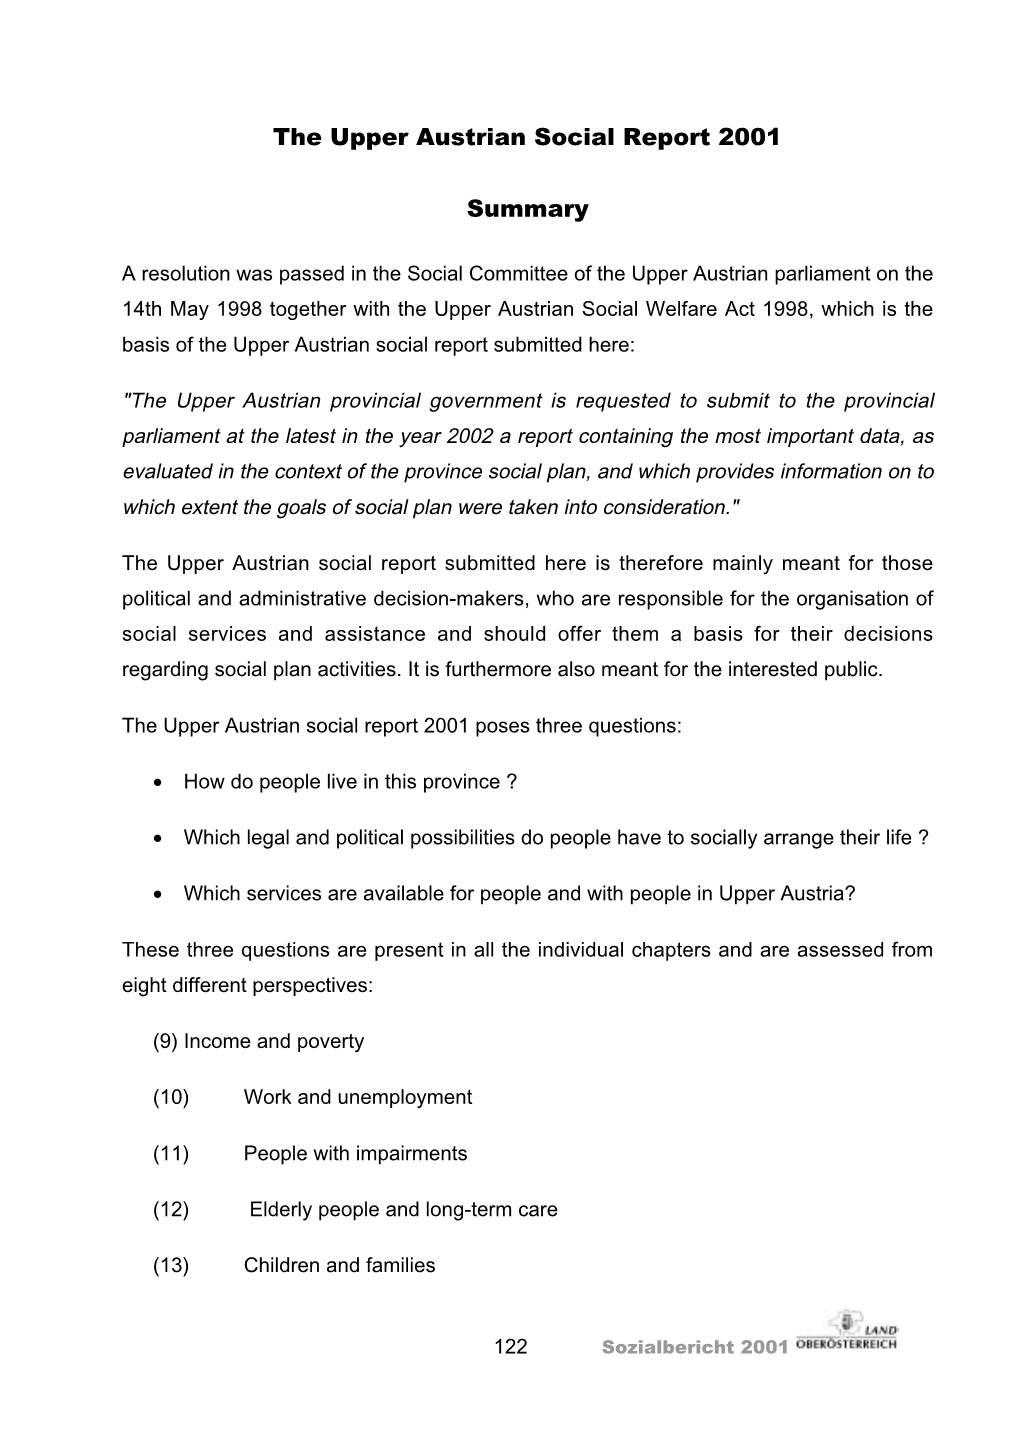 The Upper Austrian Social Report 2001 Summary